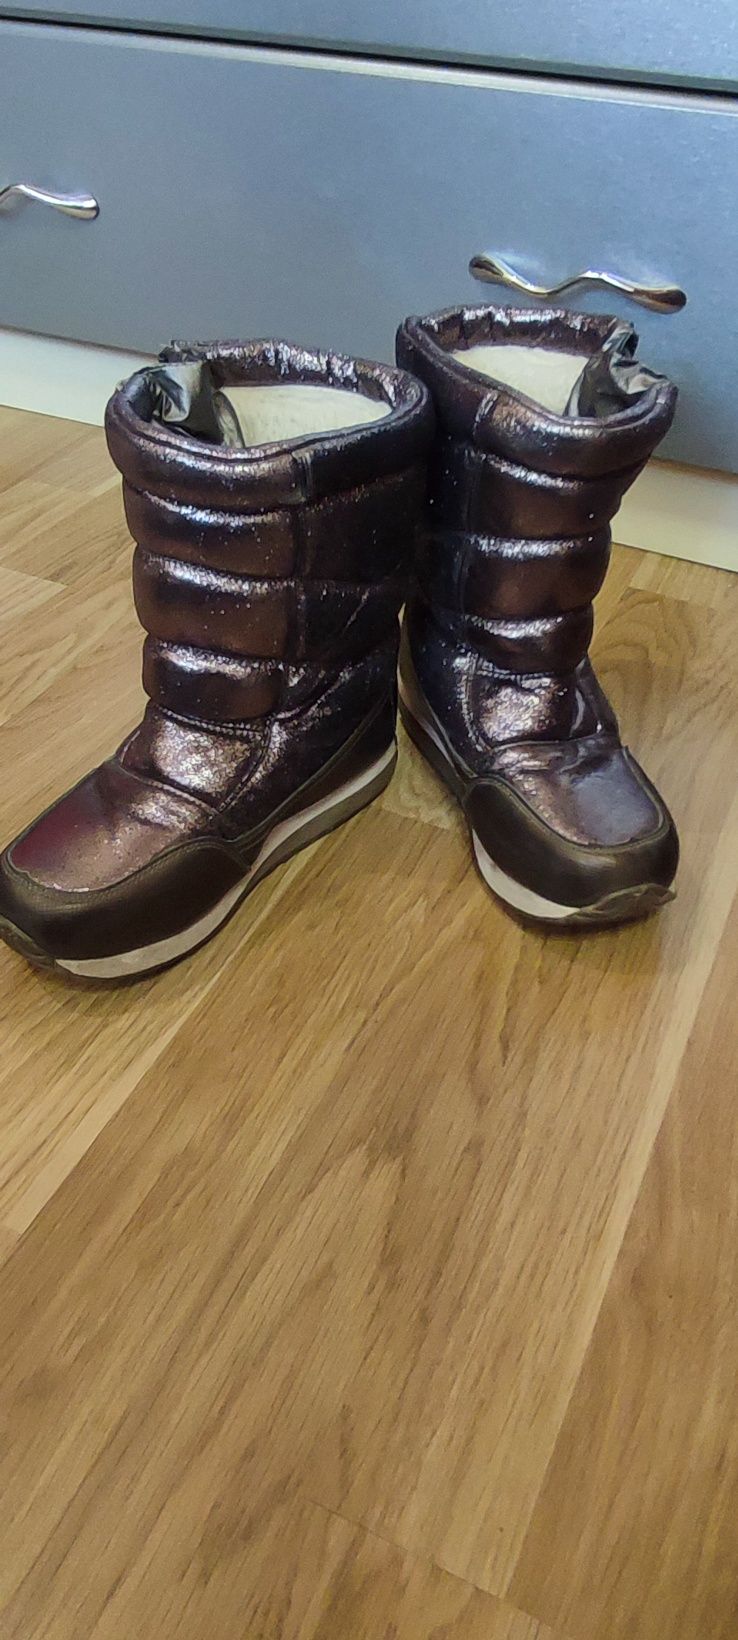 Зимові чоботи, черевики для дівчинки 35 розмір, довжина устілки 22 см.